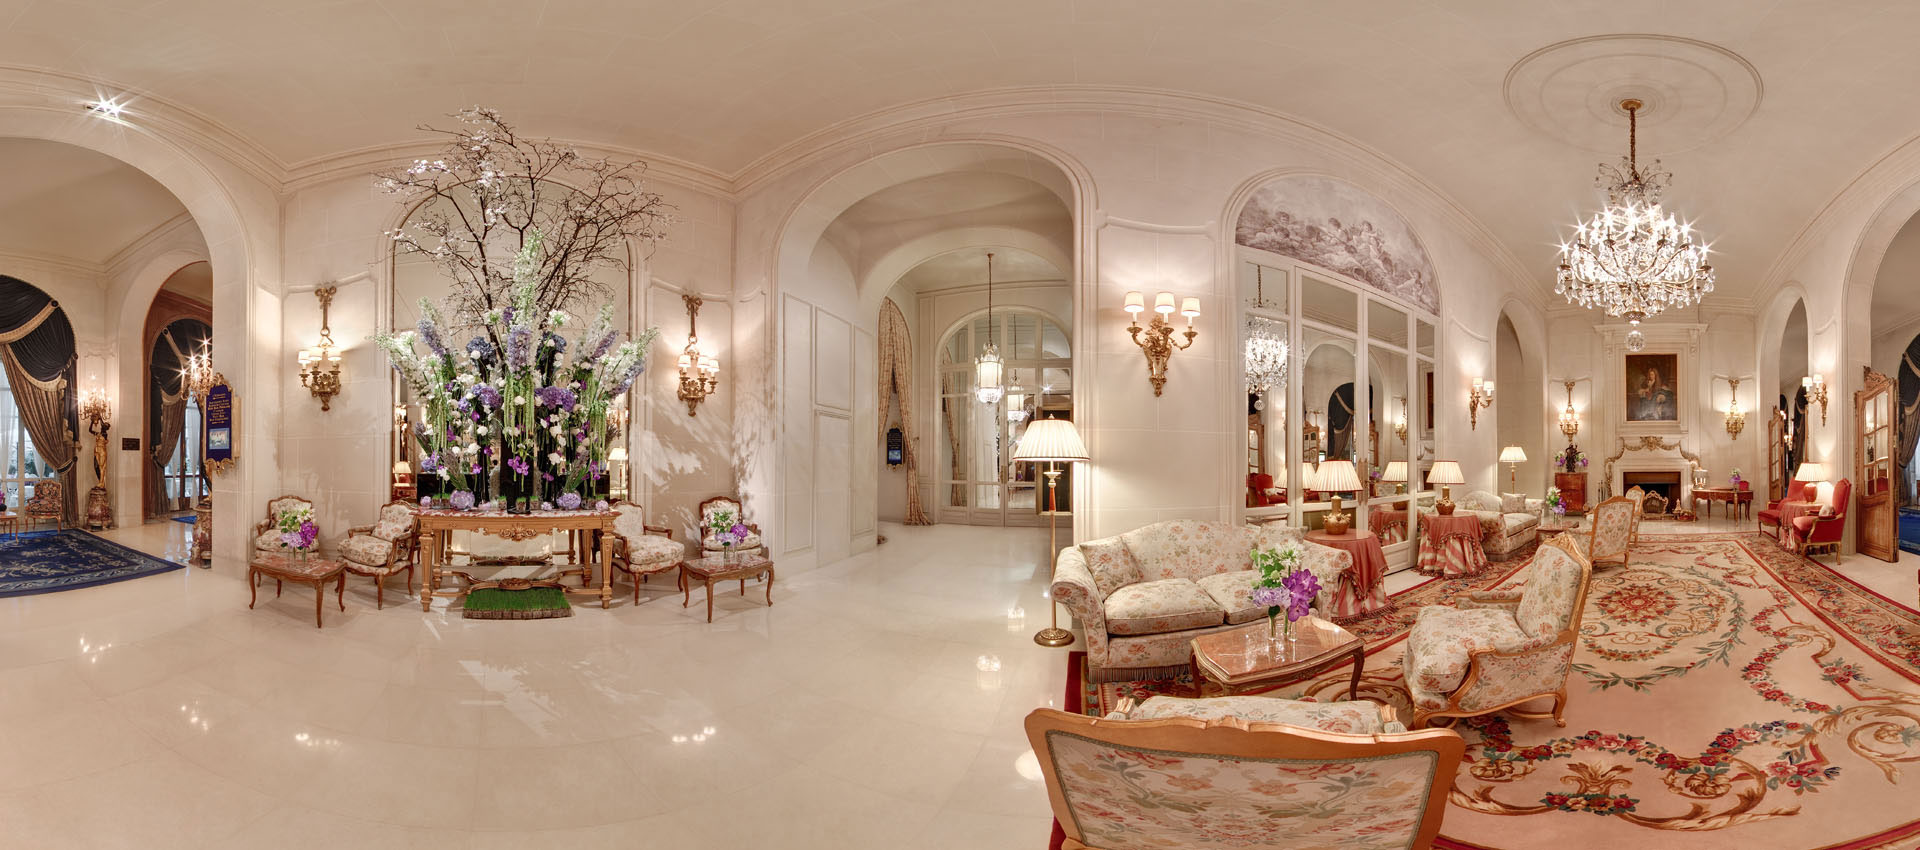 Slide - Hotel Ritz Paris - visite virtuelle 360 HD